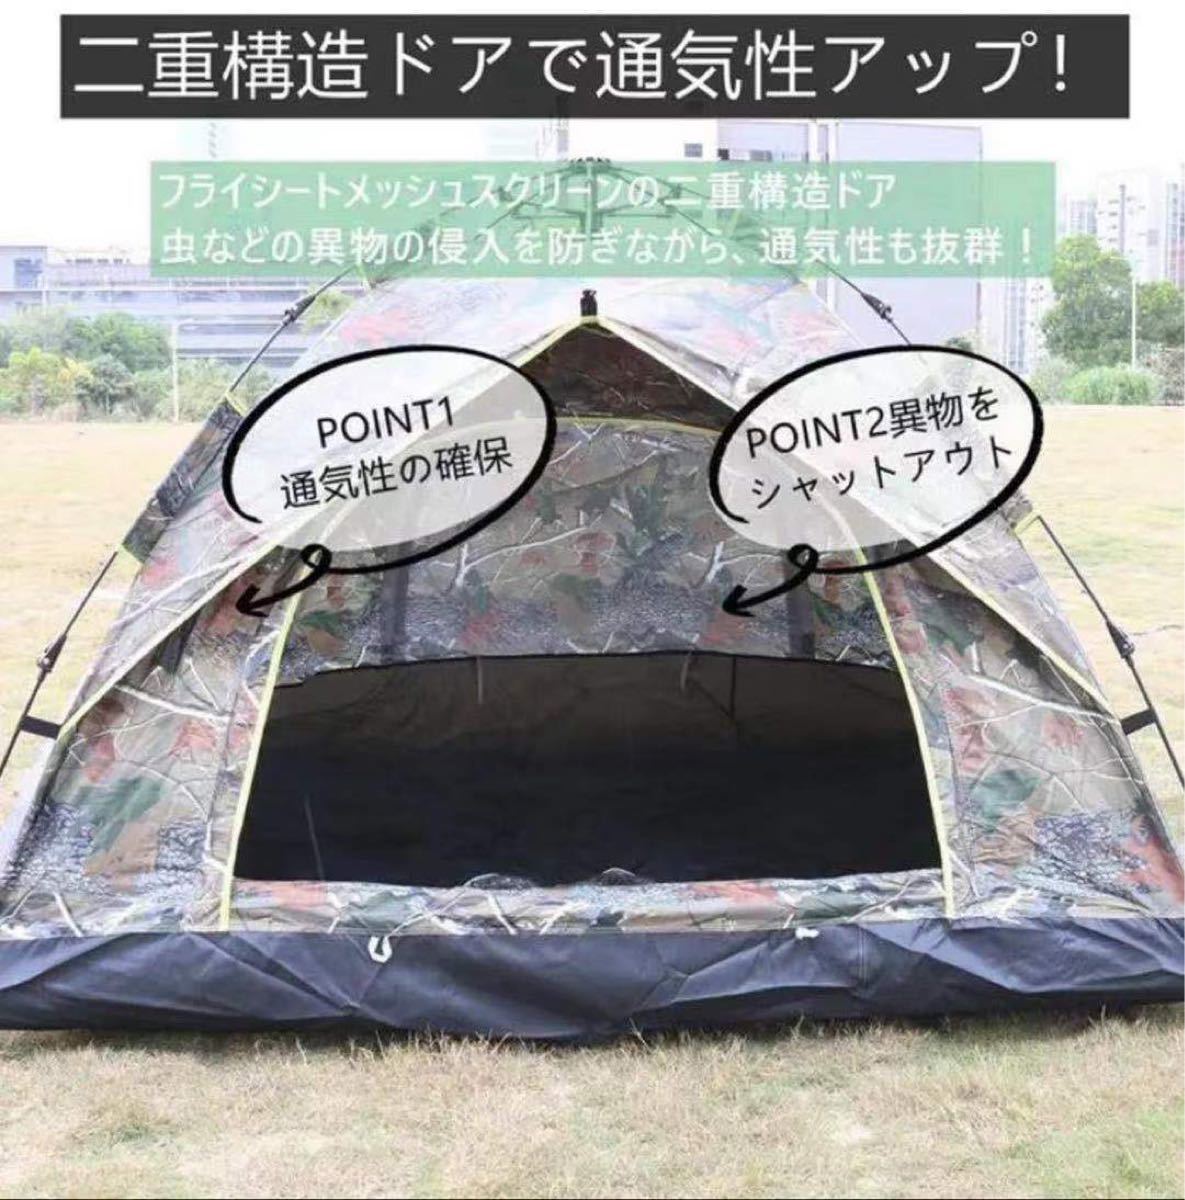 ポップアップテント 3-4人用 耐水 ワンタッチ二重層 超軽量 テント